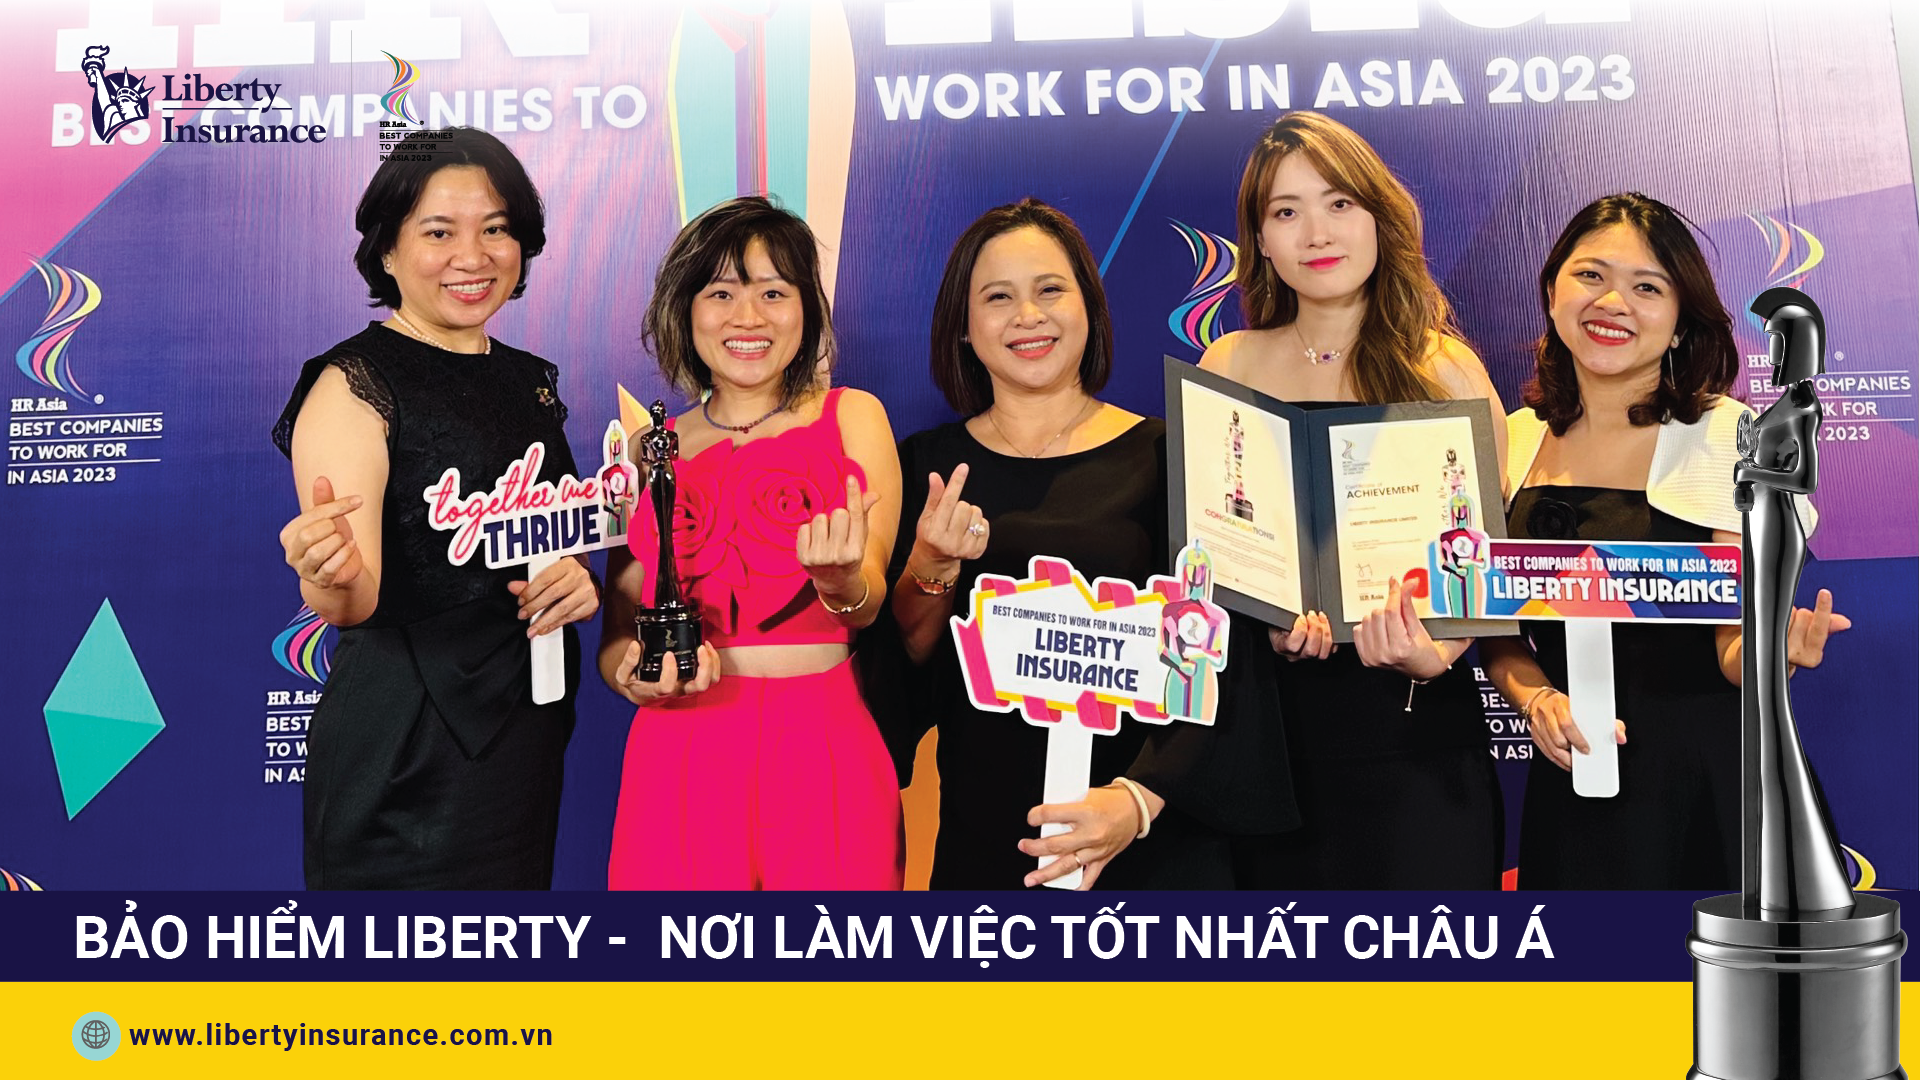 Bảo hiểm Liberty - Nơi Làm việc Tốt nhất châu Á (2)